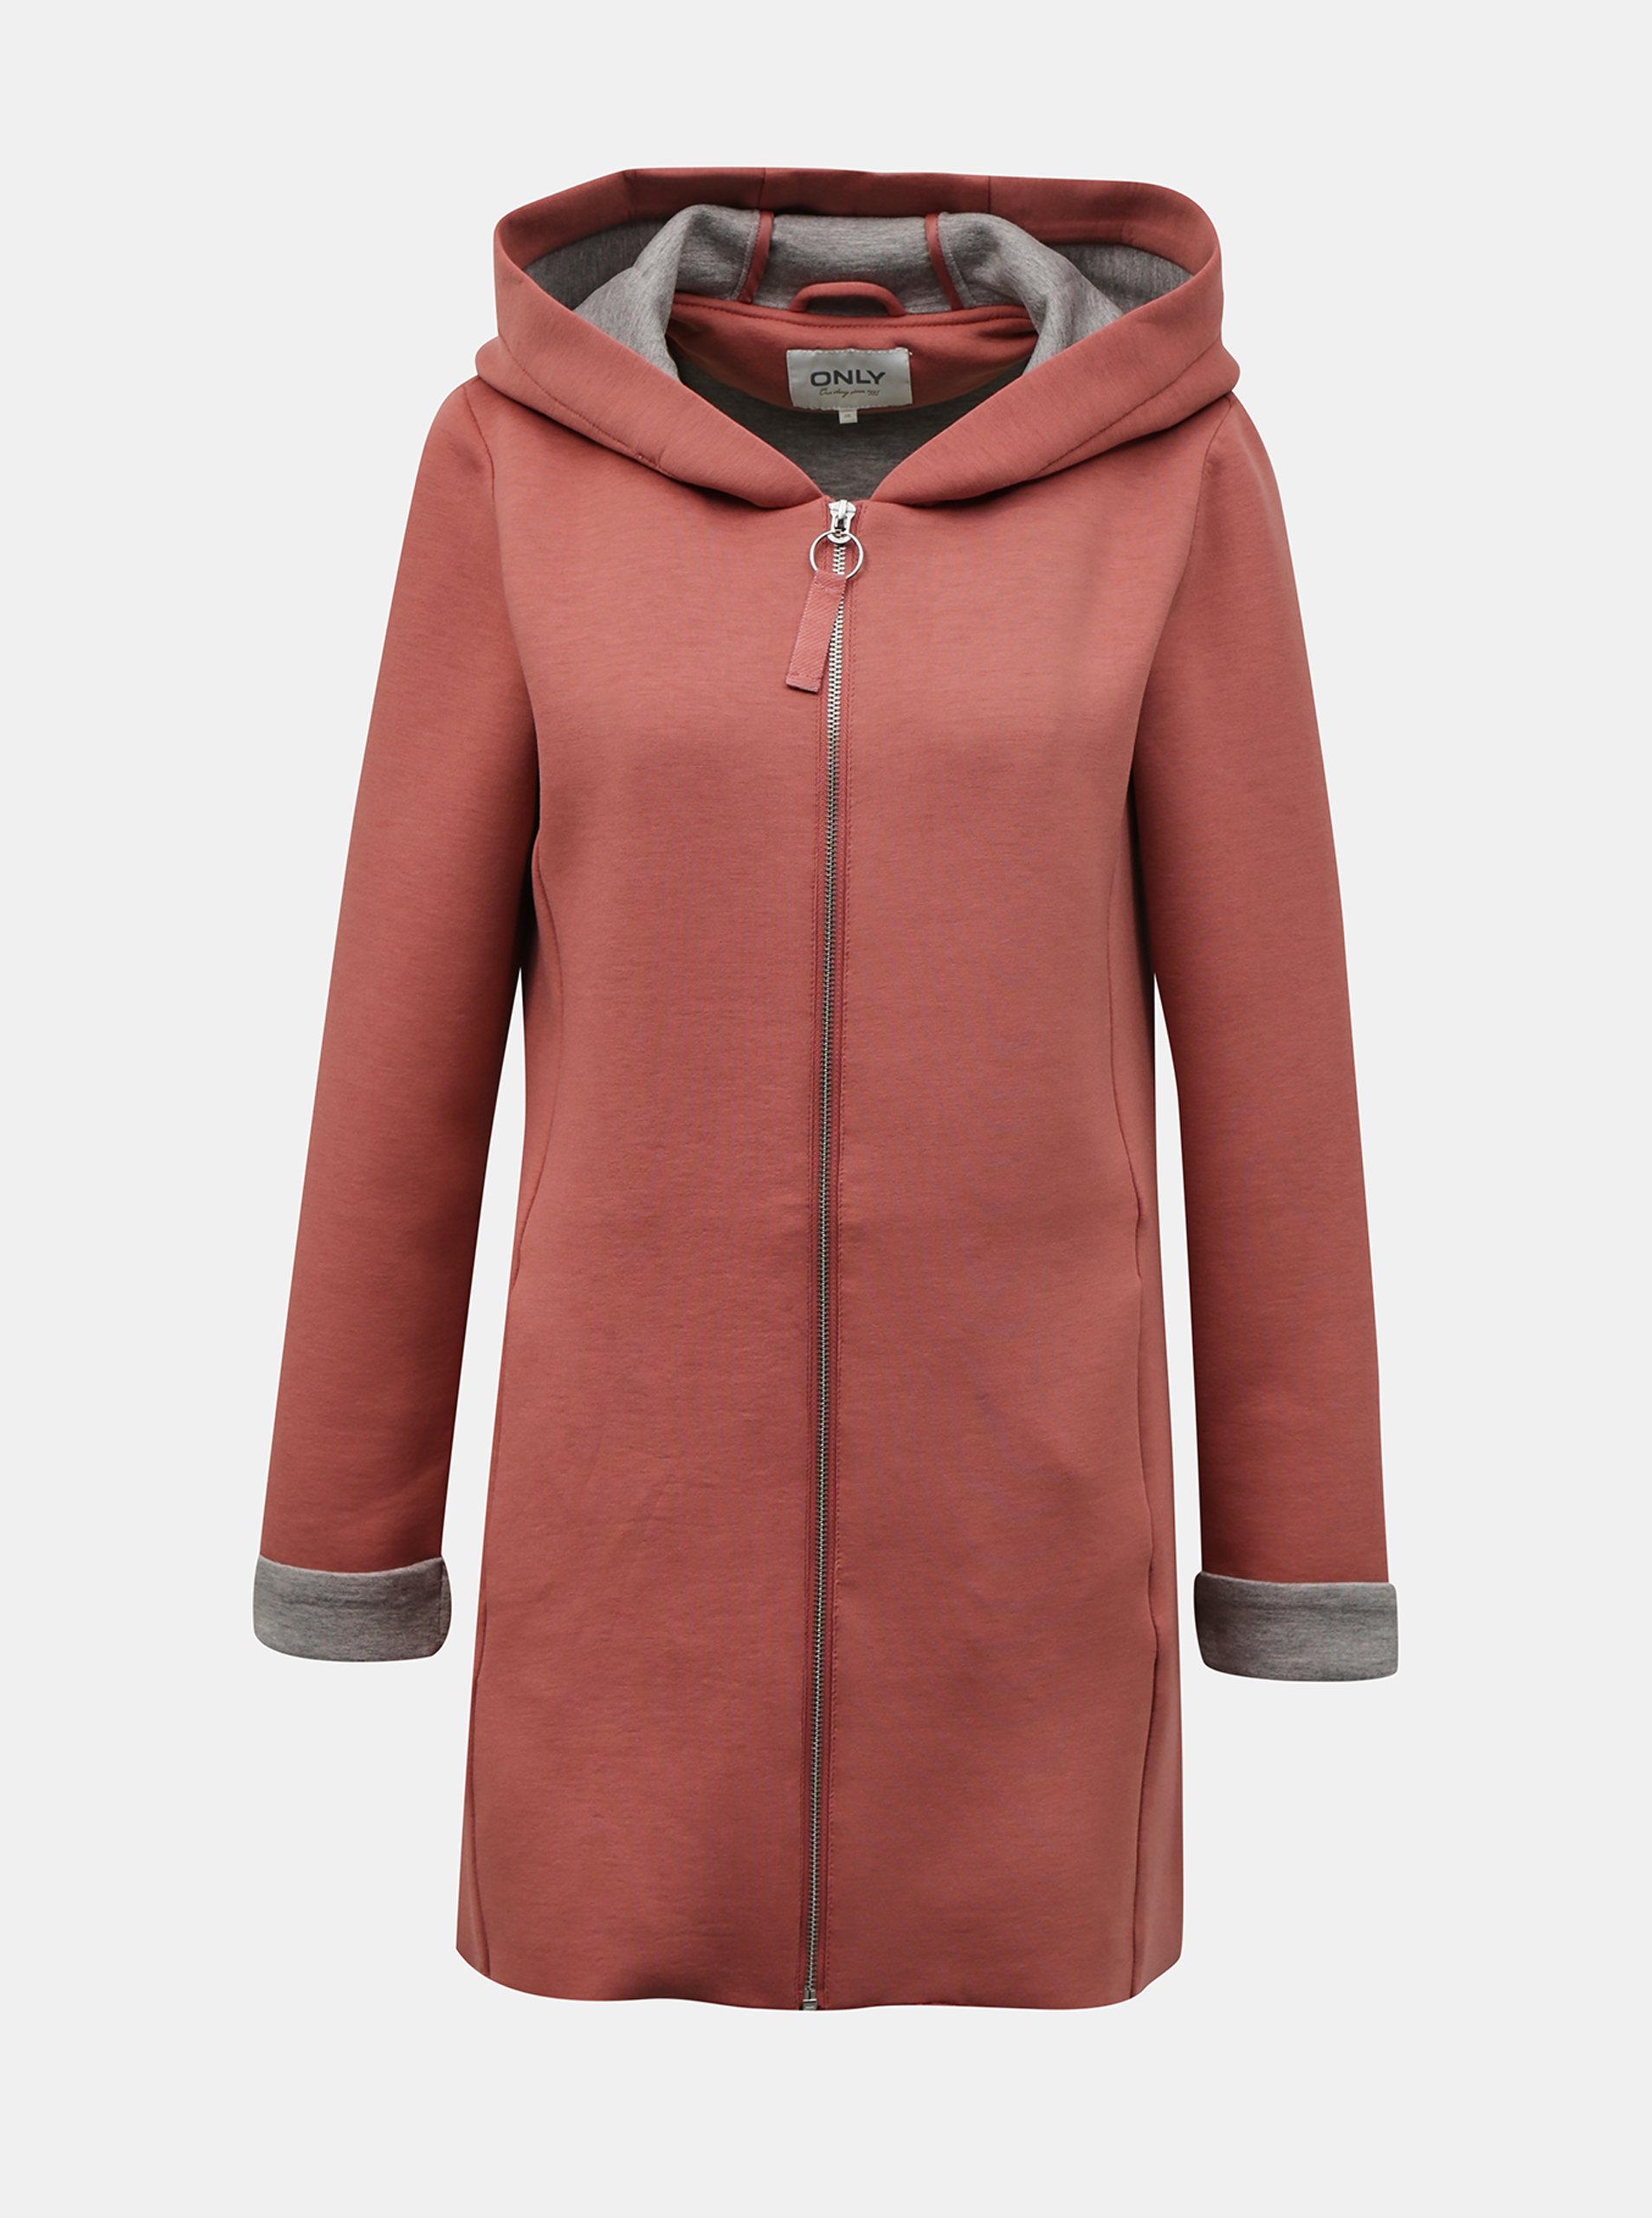 E-shop Růžový dámský lehký kabát s kapucí ONLY Lena